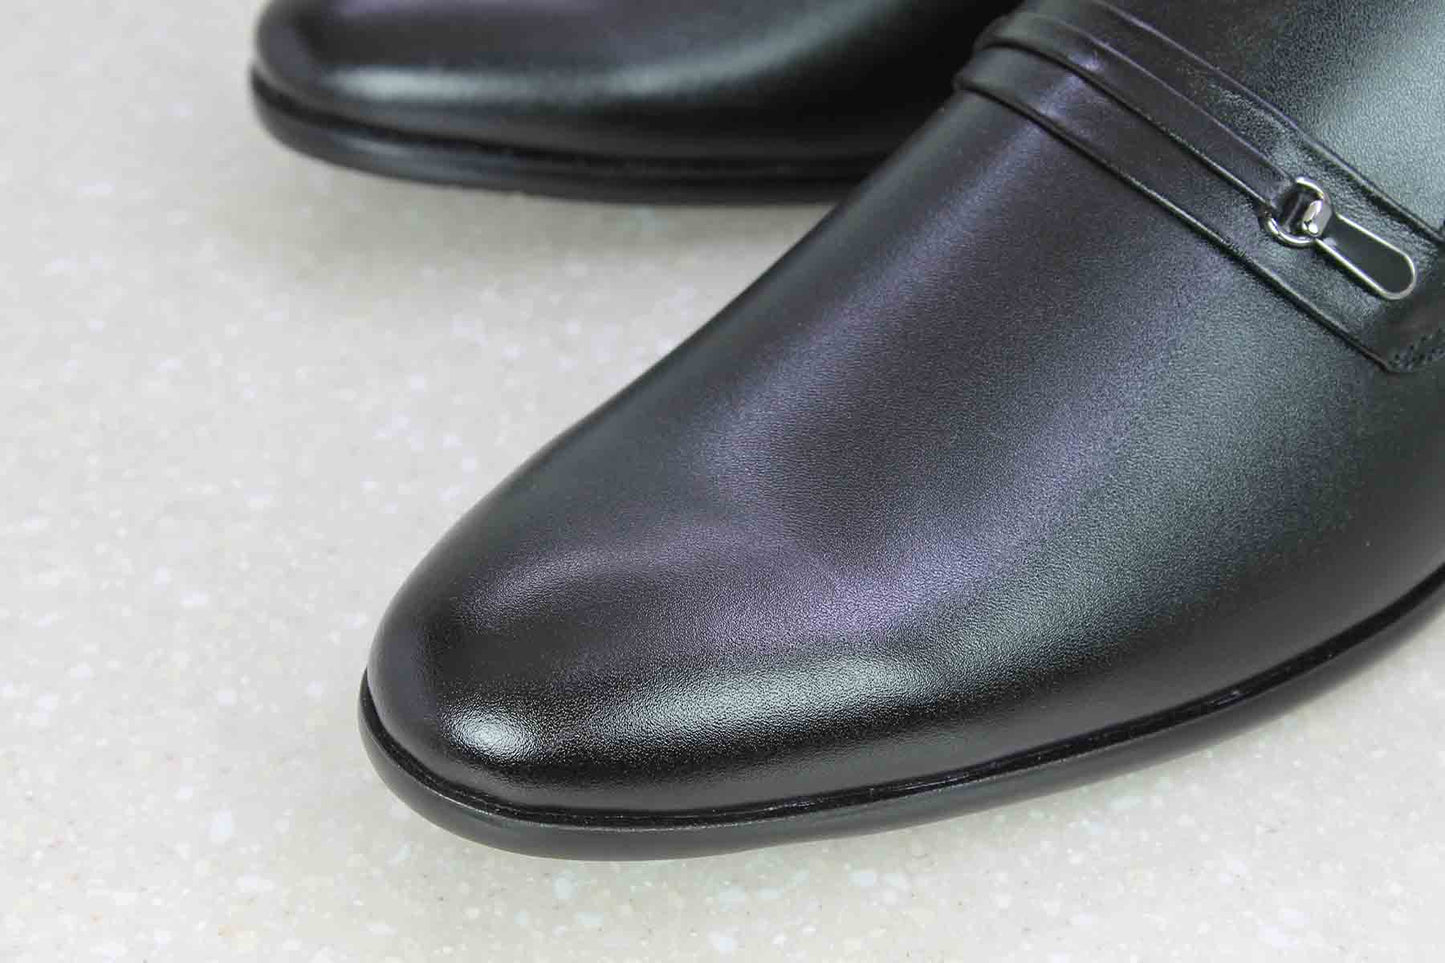 BROOCH LEATEHR SLIPPON-BLACK-Men's Formal Shoe-Inc5 Shoes